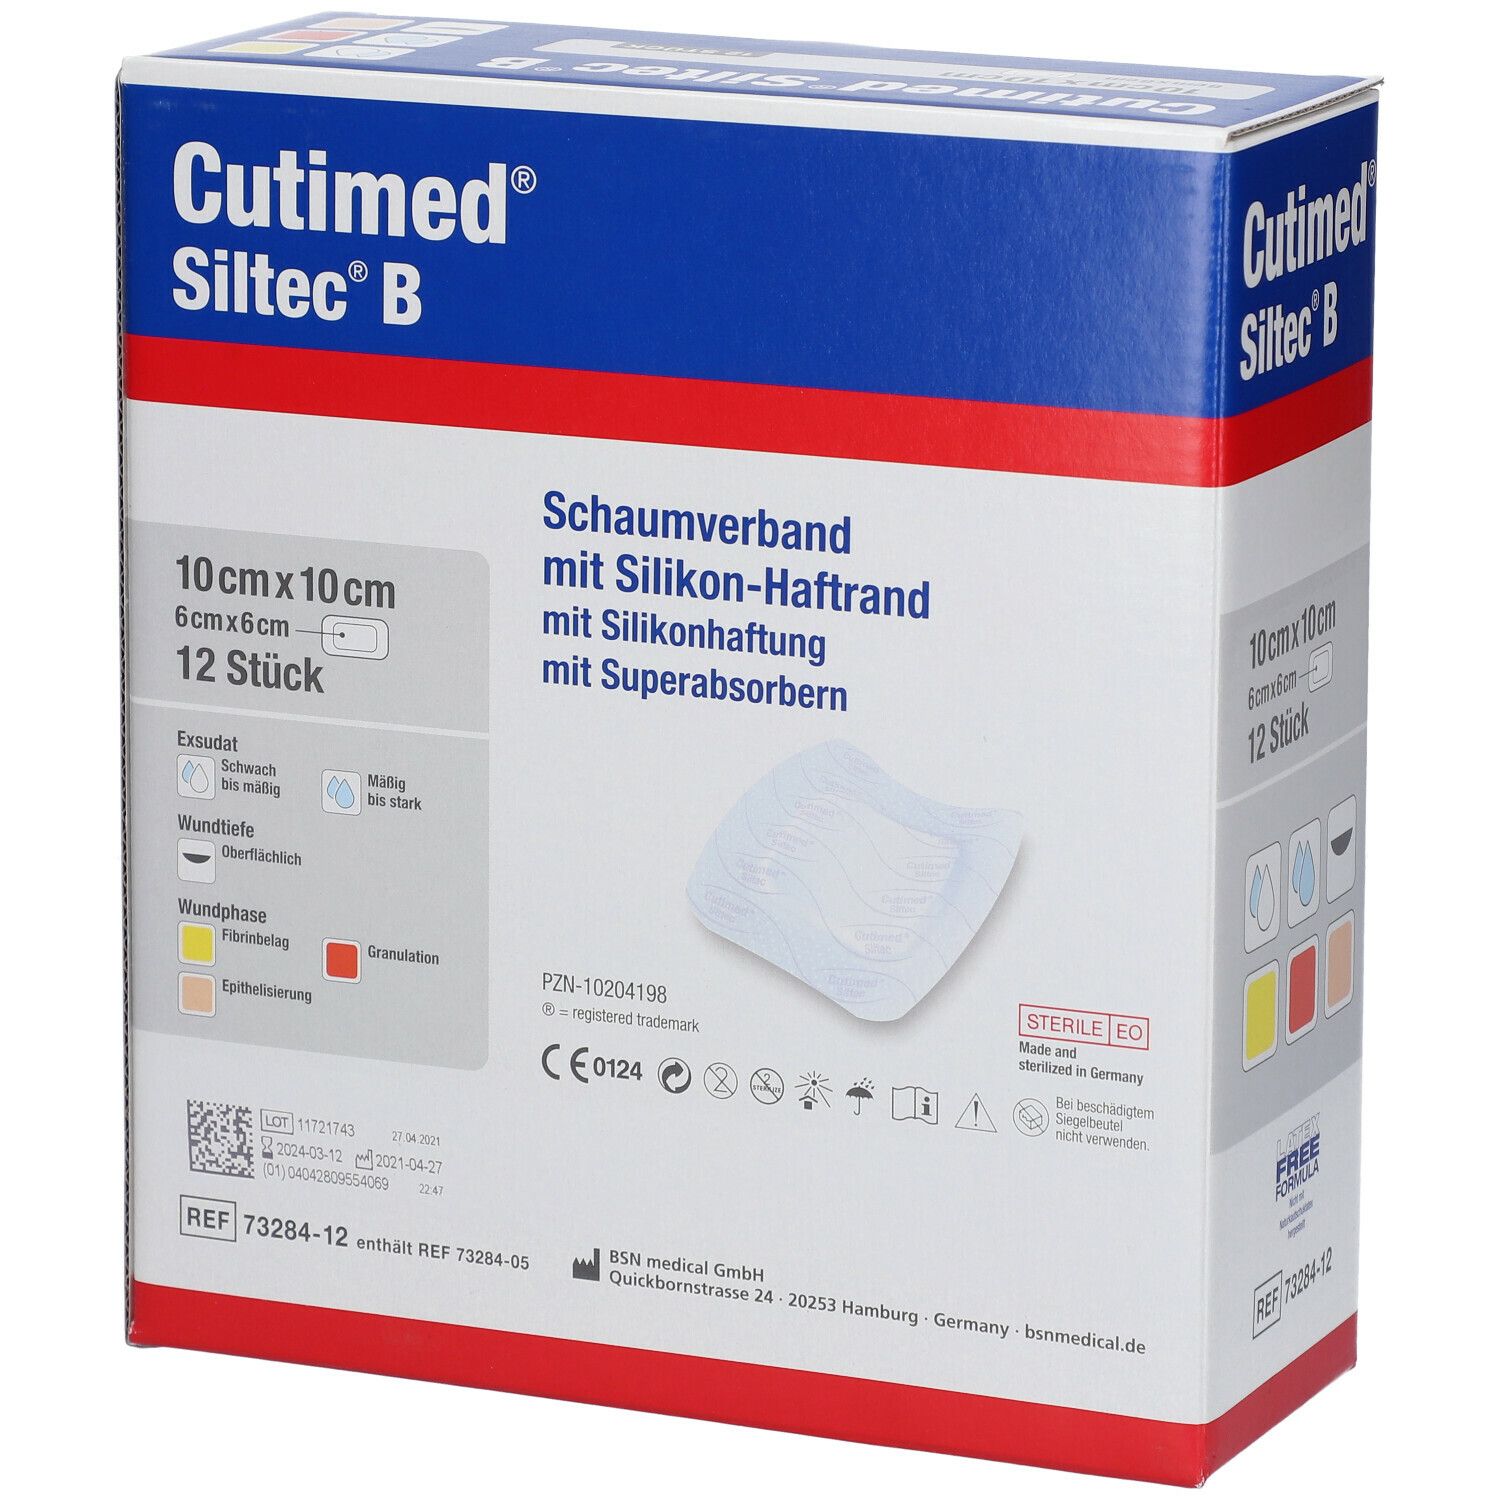 Cutimed® Siltec B 10 cm x 10 cm